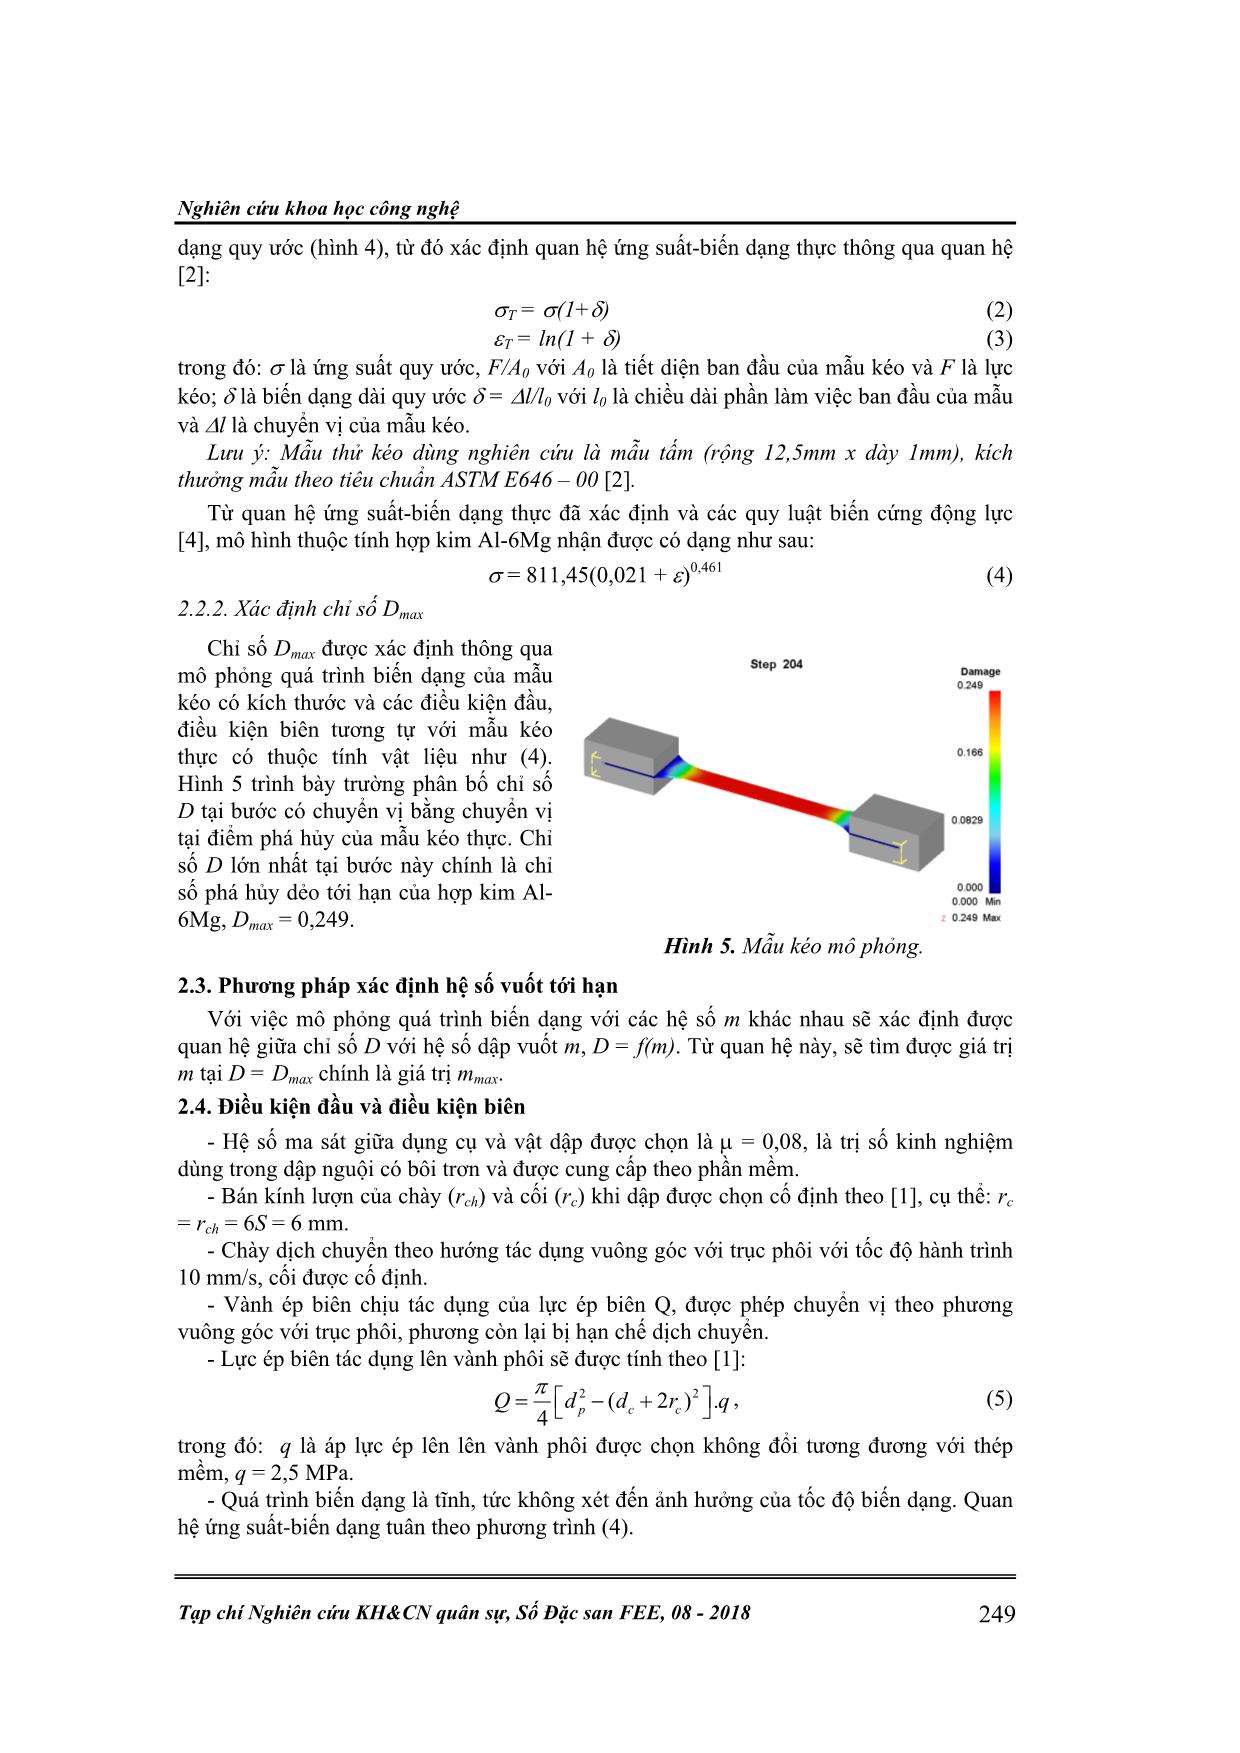 Xác định hệ số vuốt tới hạn khi dập vuốt cốc có vành bằng hợp kim  Al-6Mg trang 3